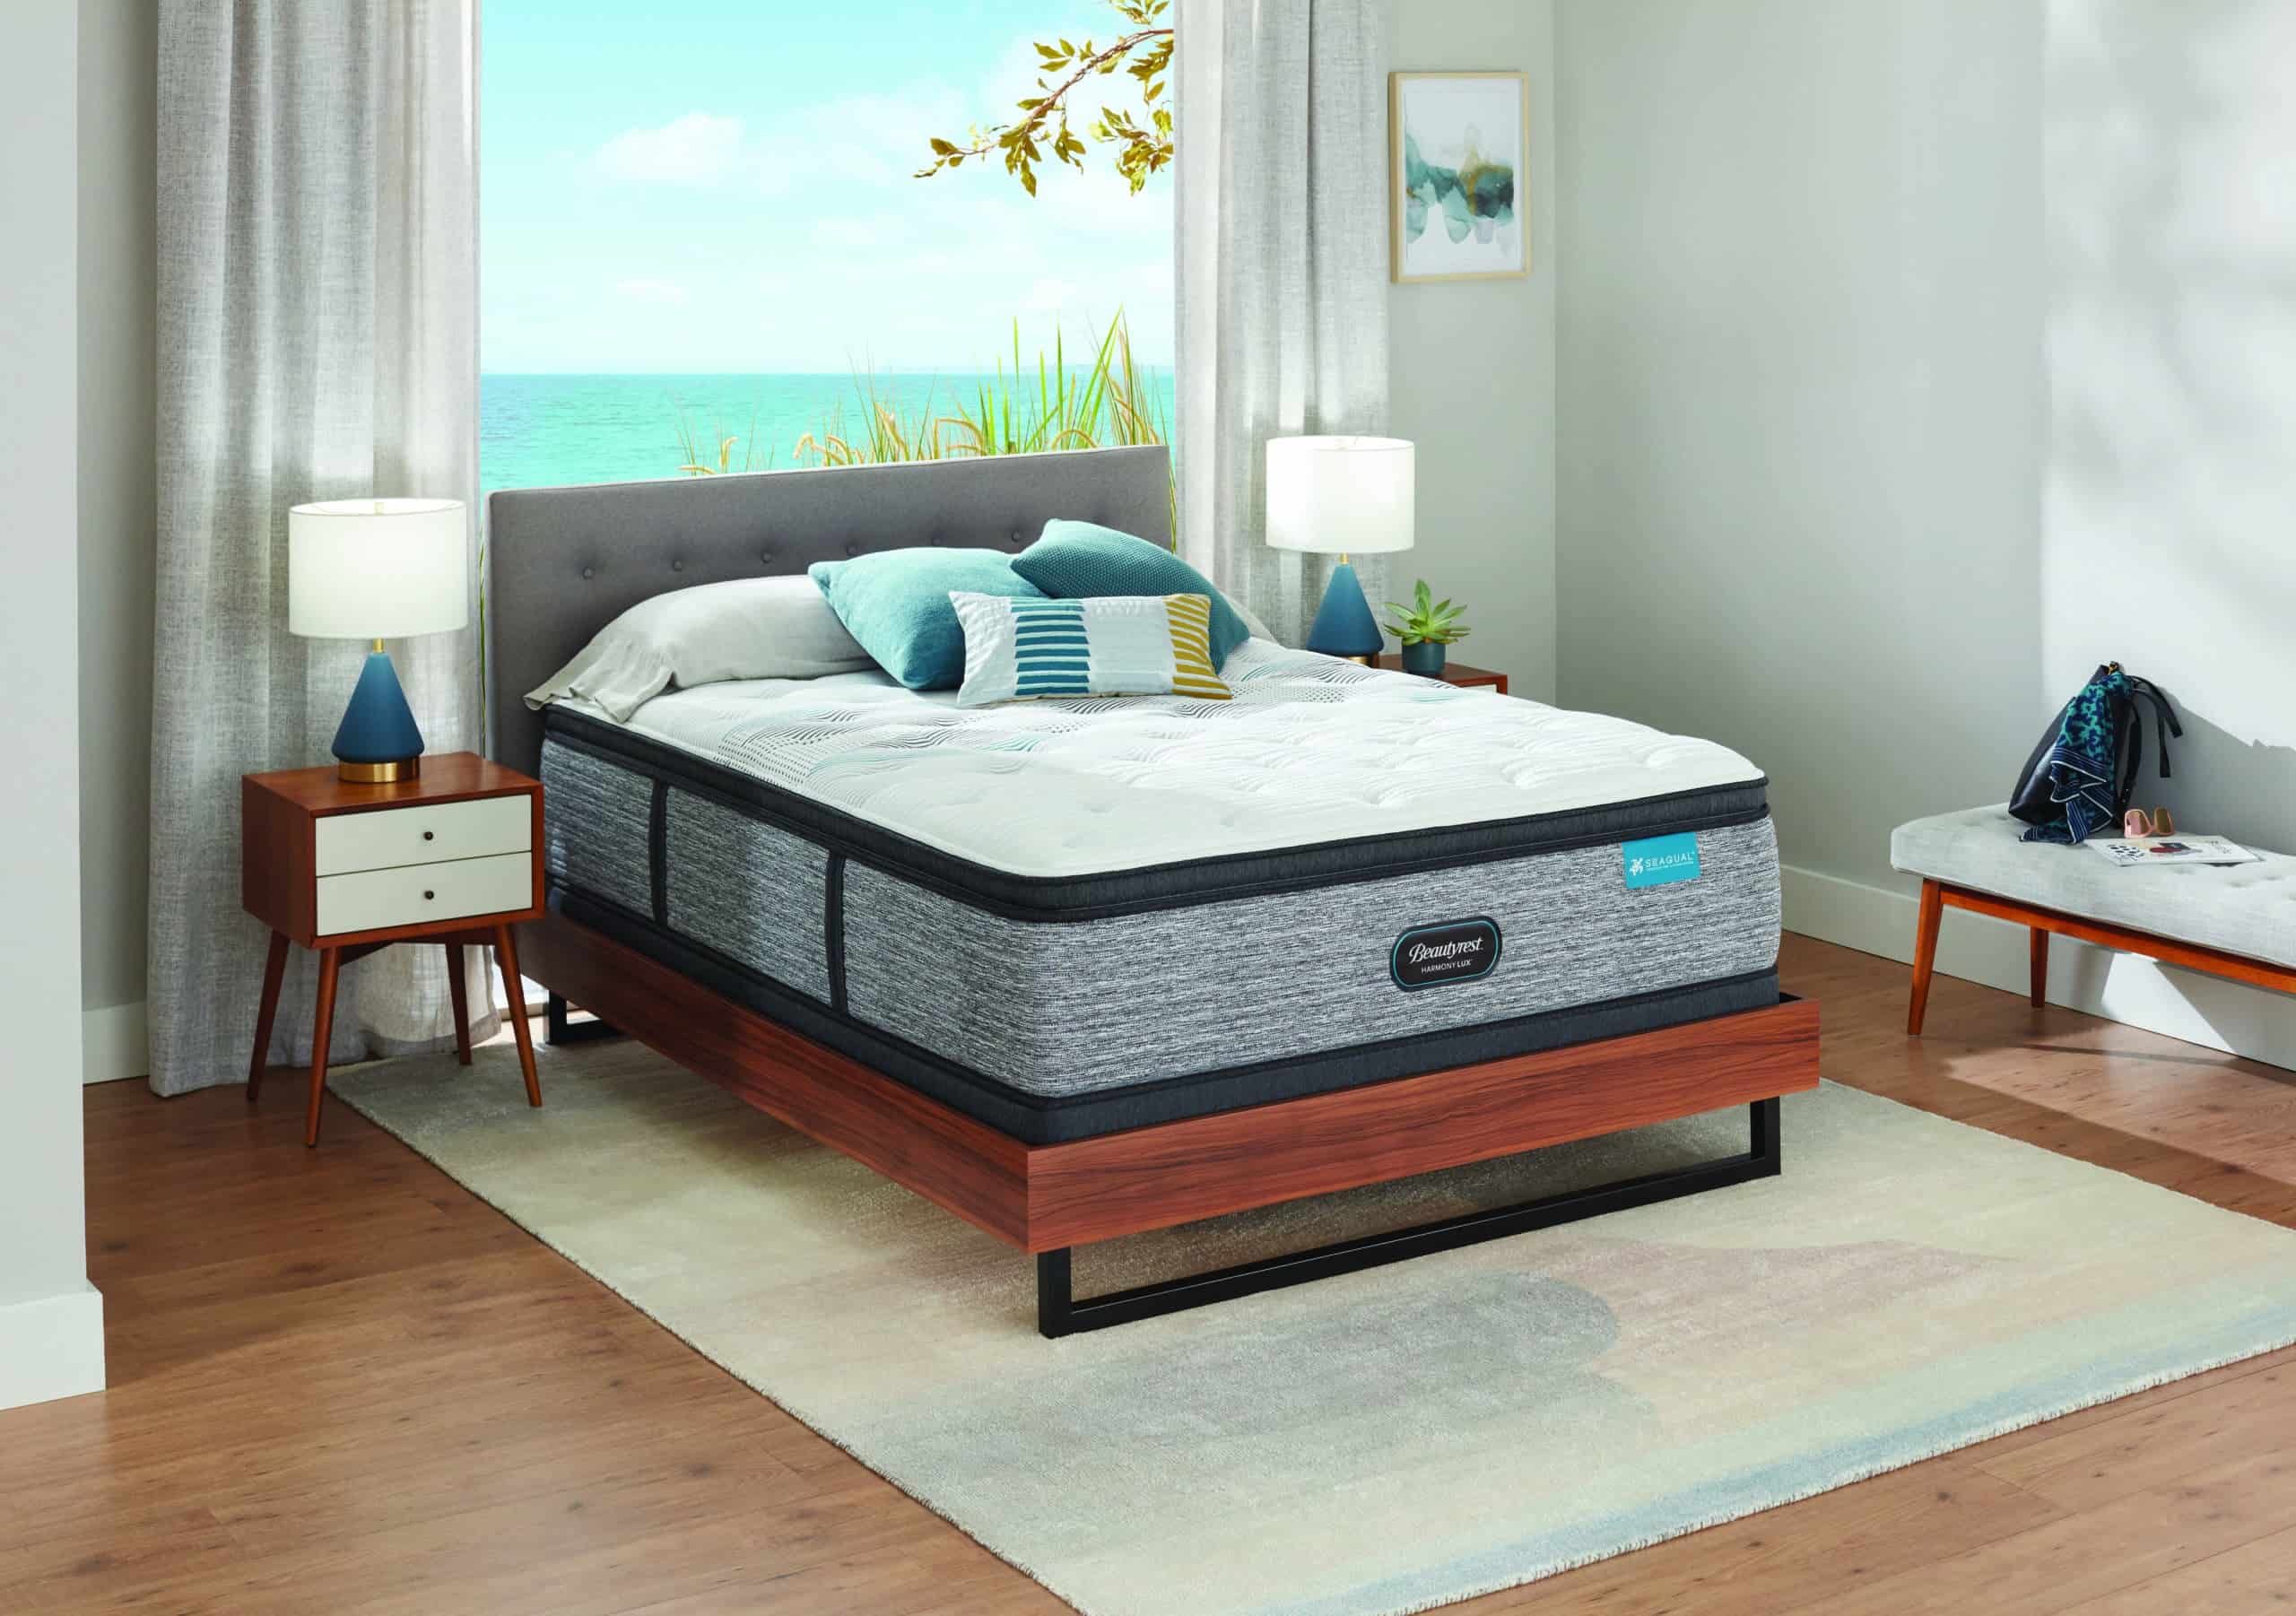 beautyrest 13.5 plush pillow top mattress